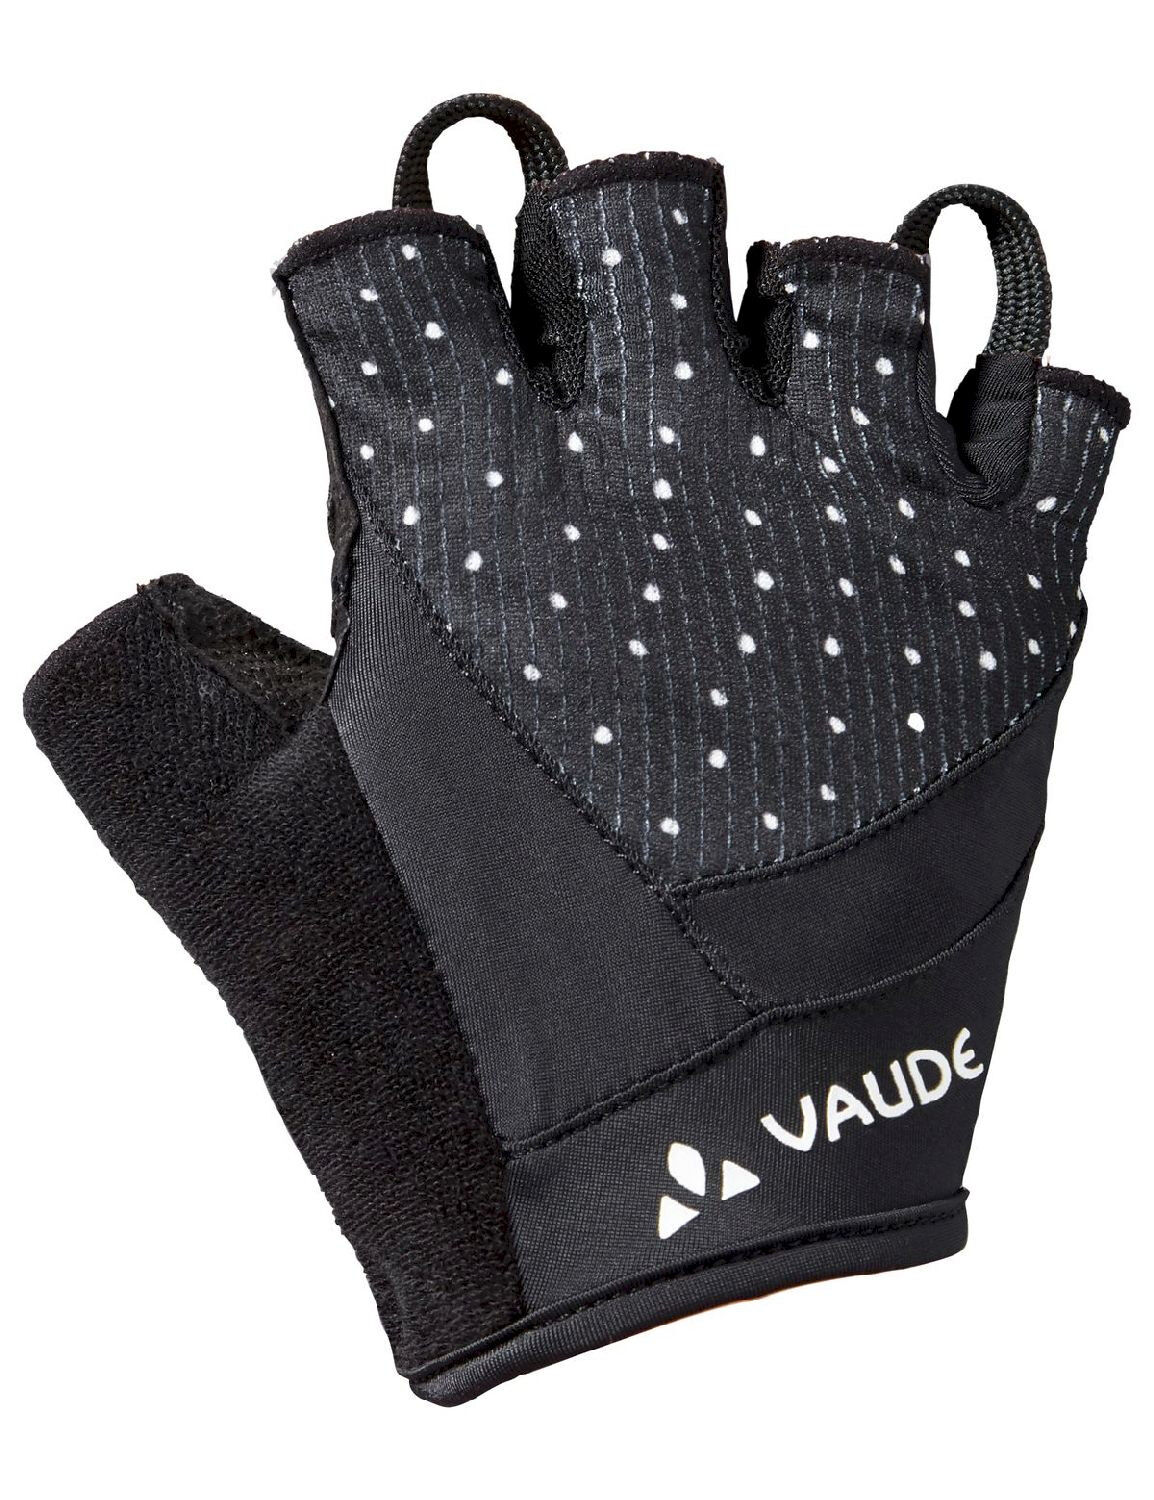 Vaude Advanced Gloves II - Cykelhandskar - Dam